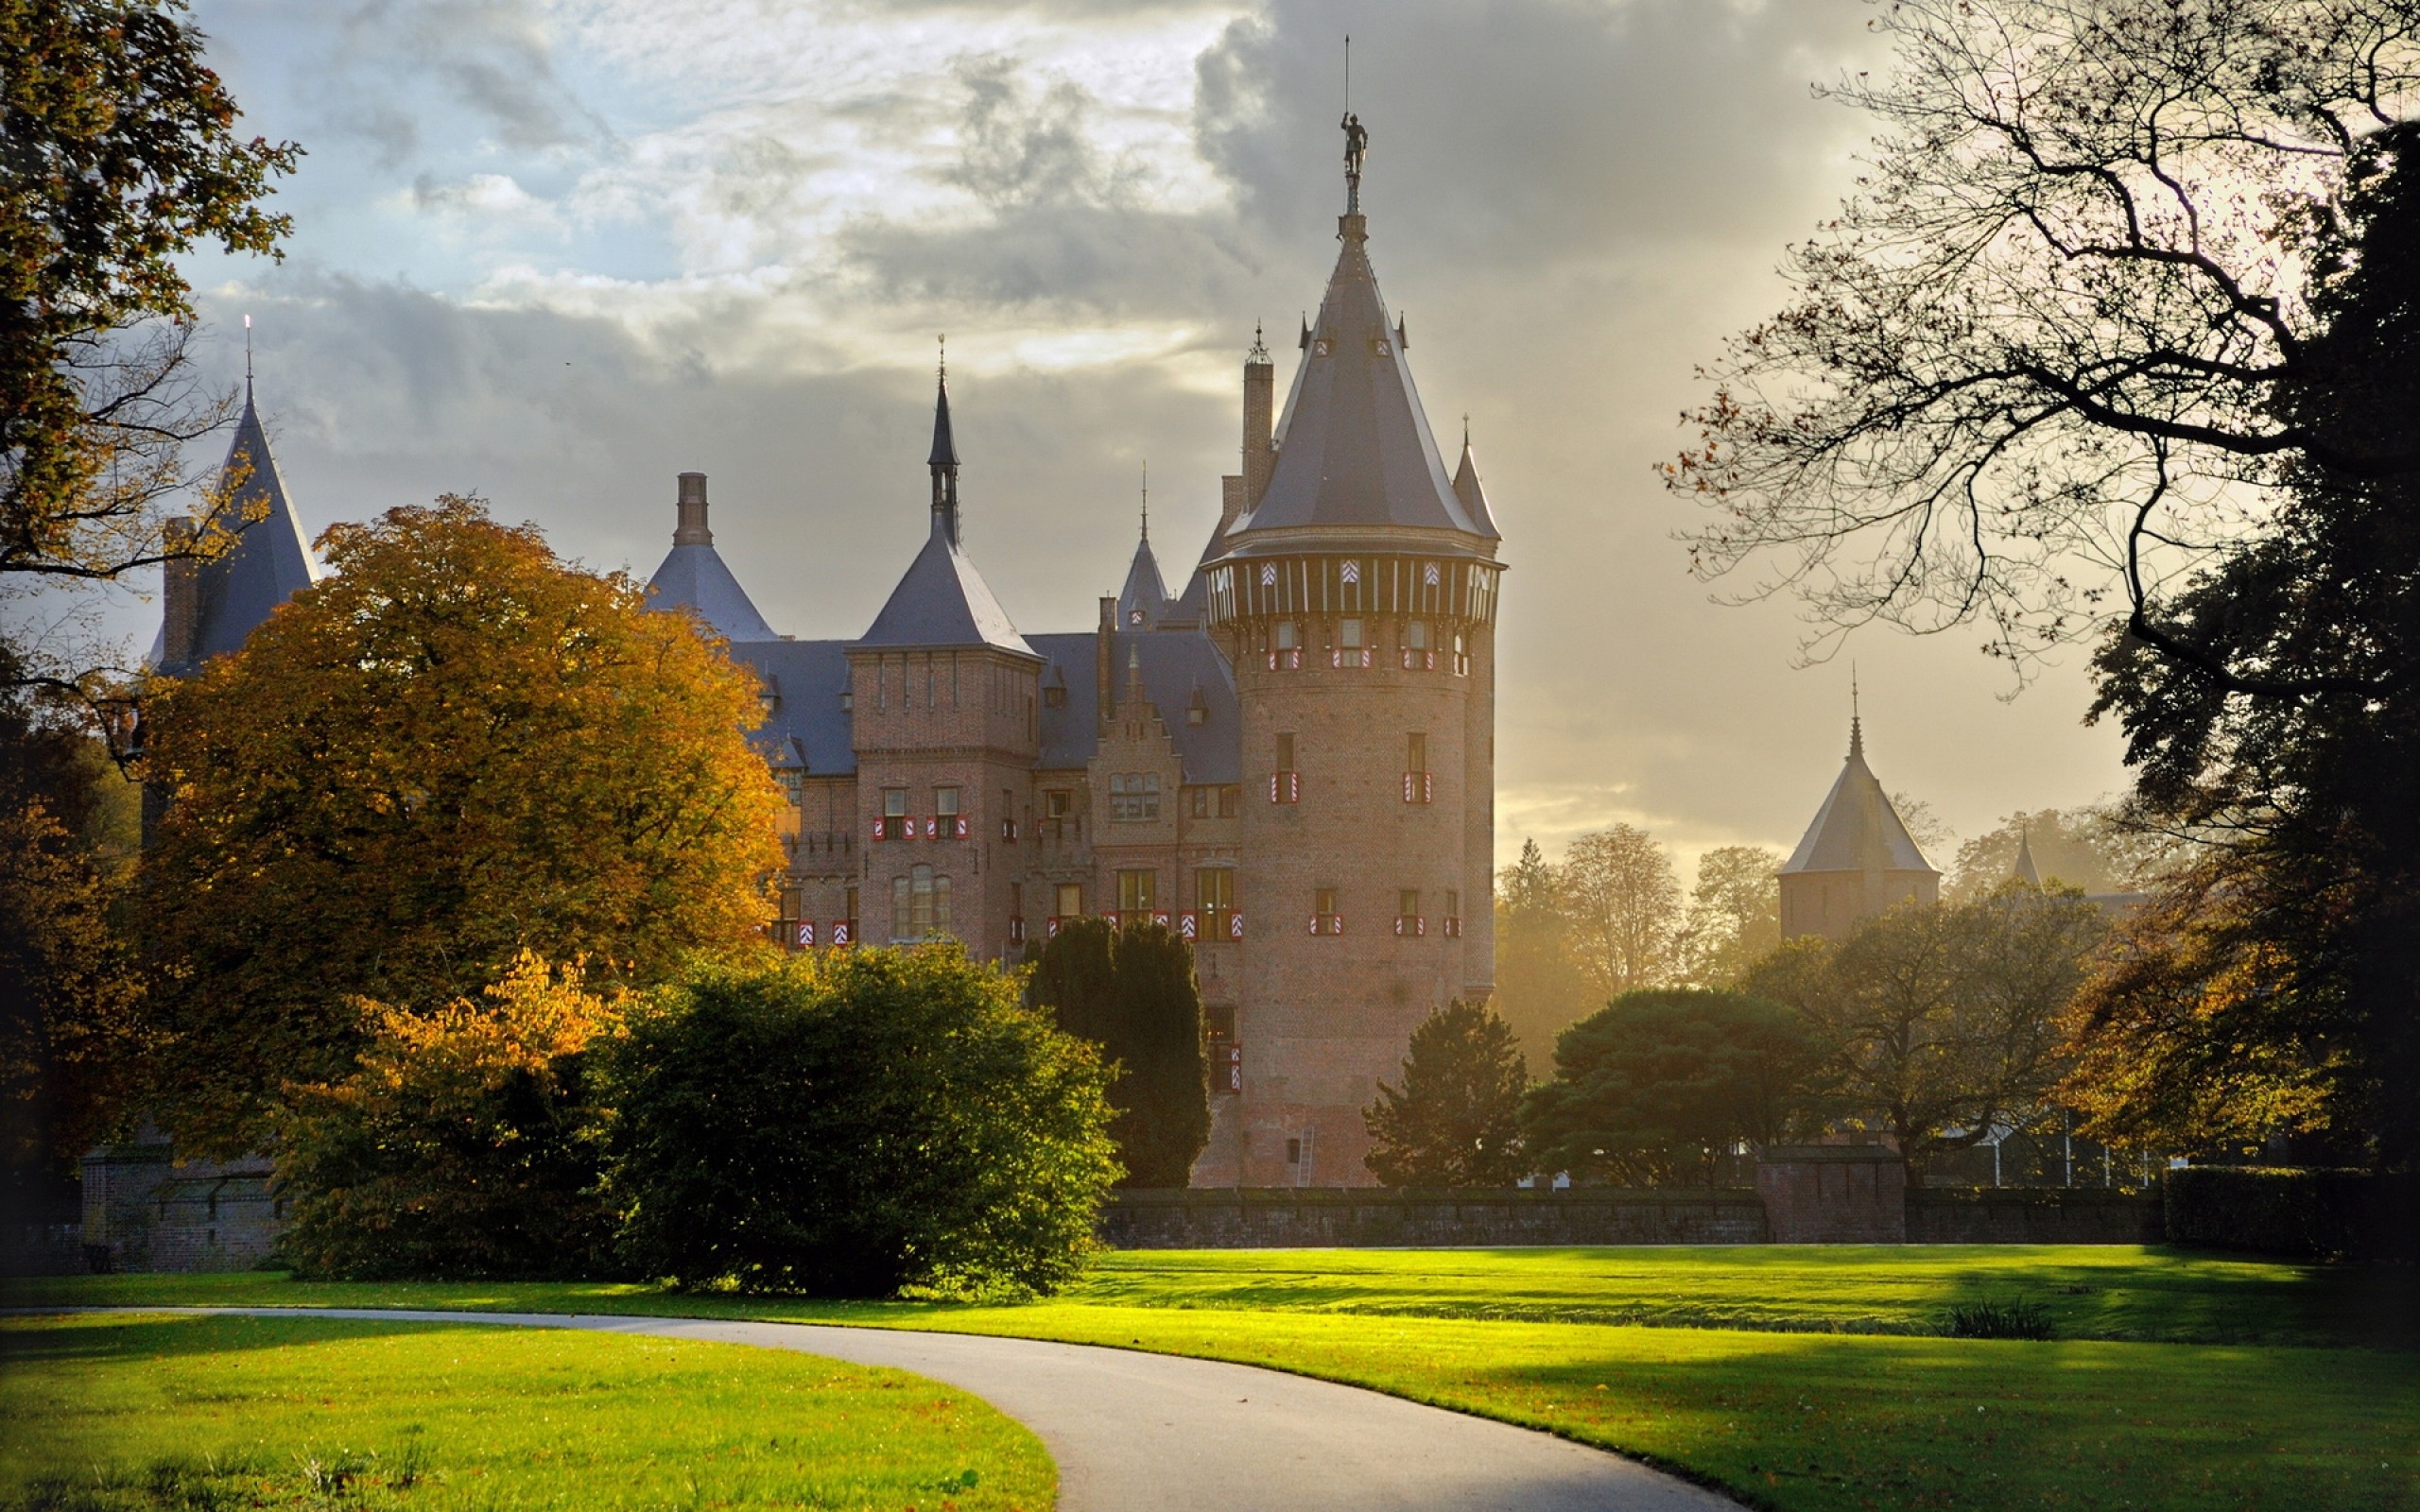 Обои на стол замки. Замок де Хаар Утрехт. Замок де Хаар Нидерланды. Замок фон Гайслера. Резиденция короля Нидерландов.